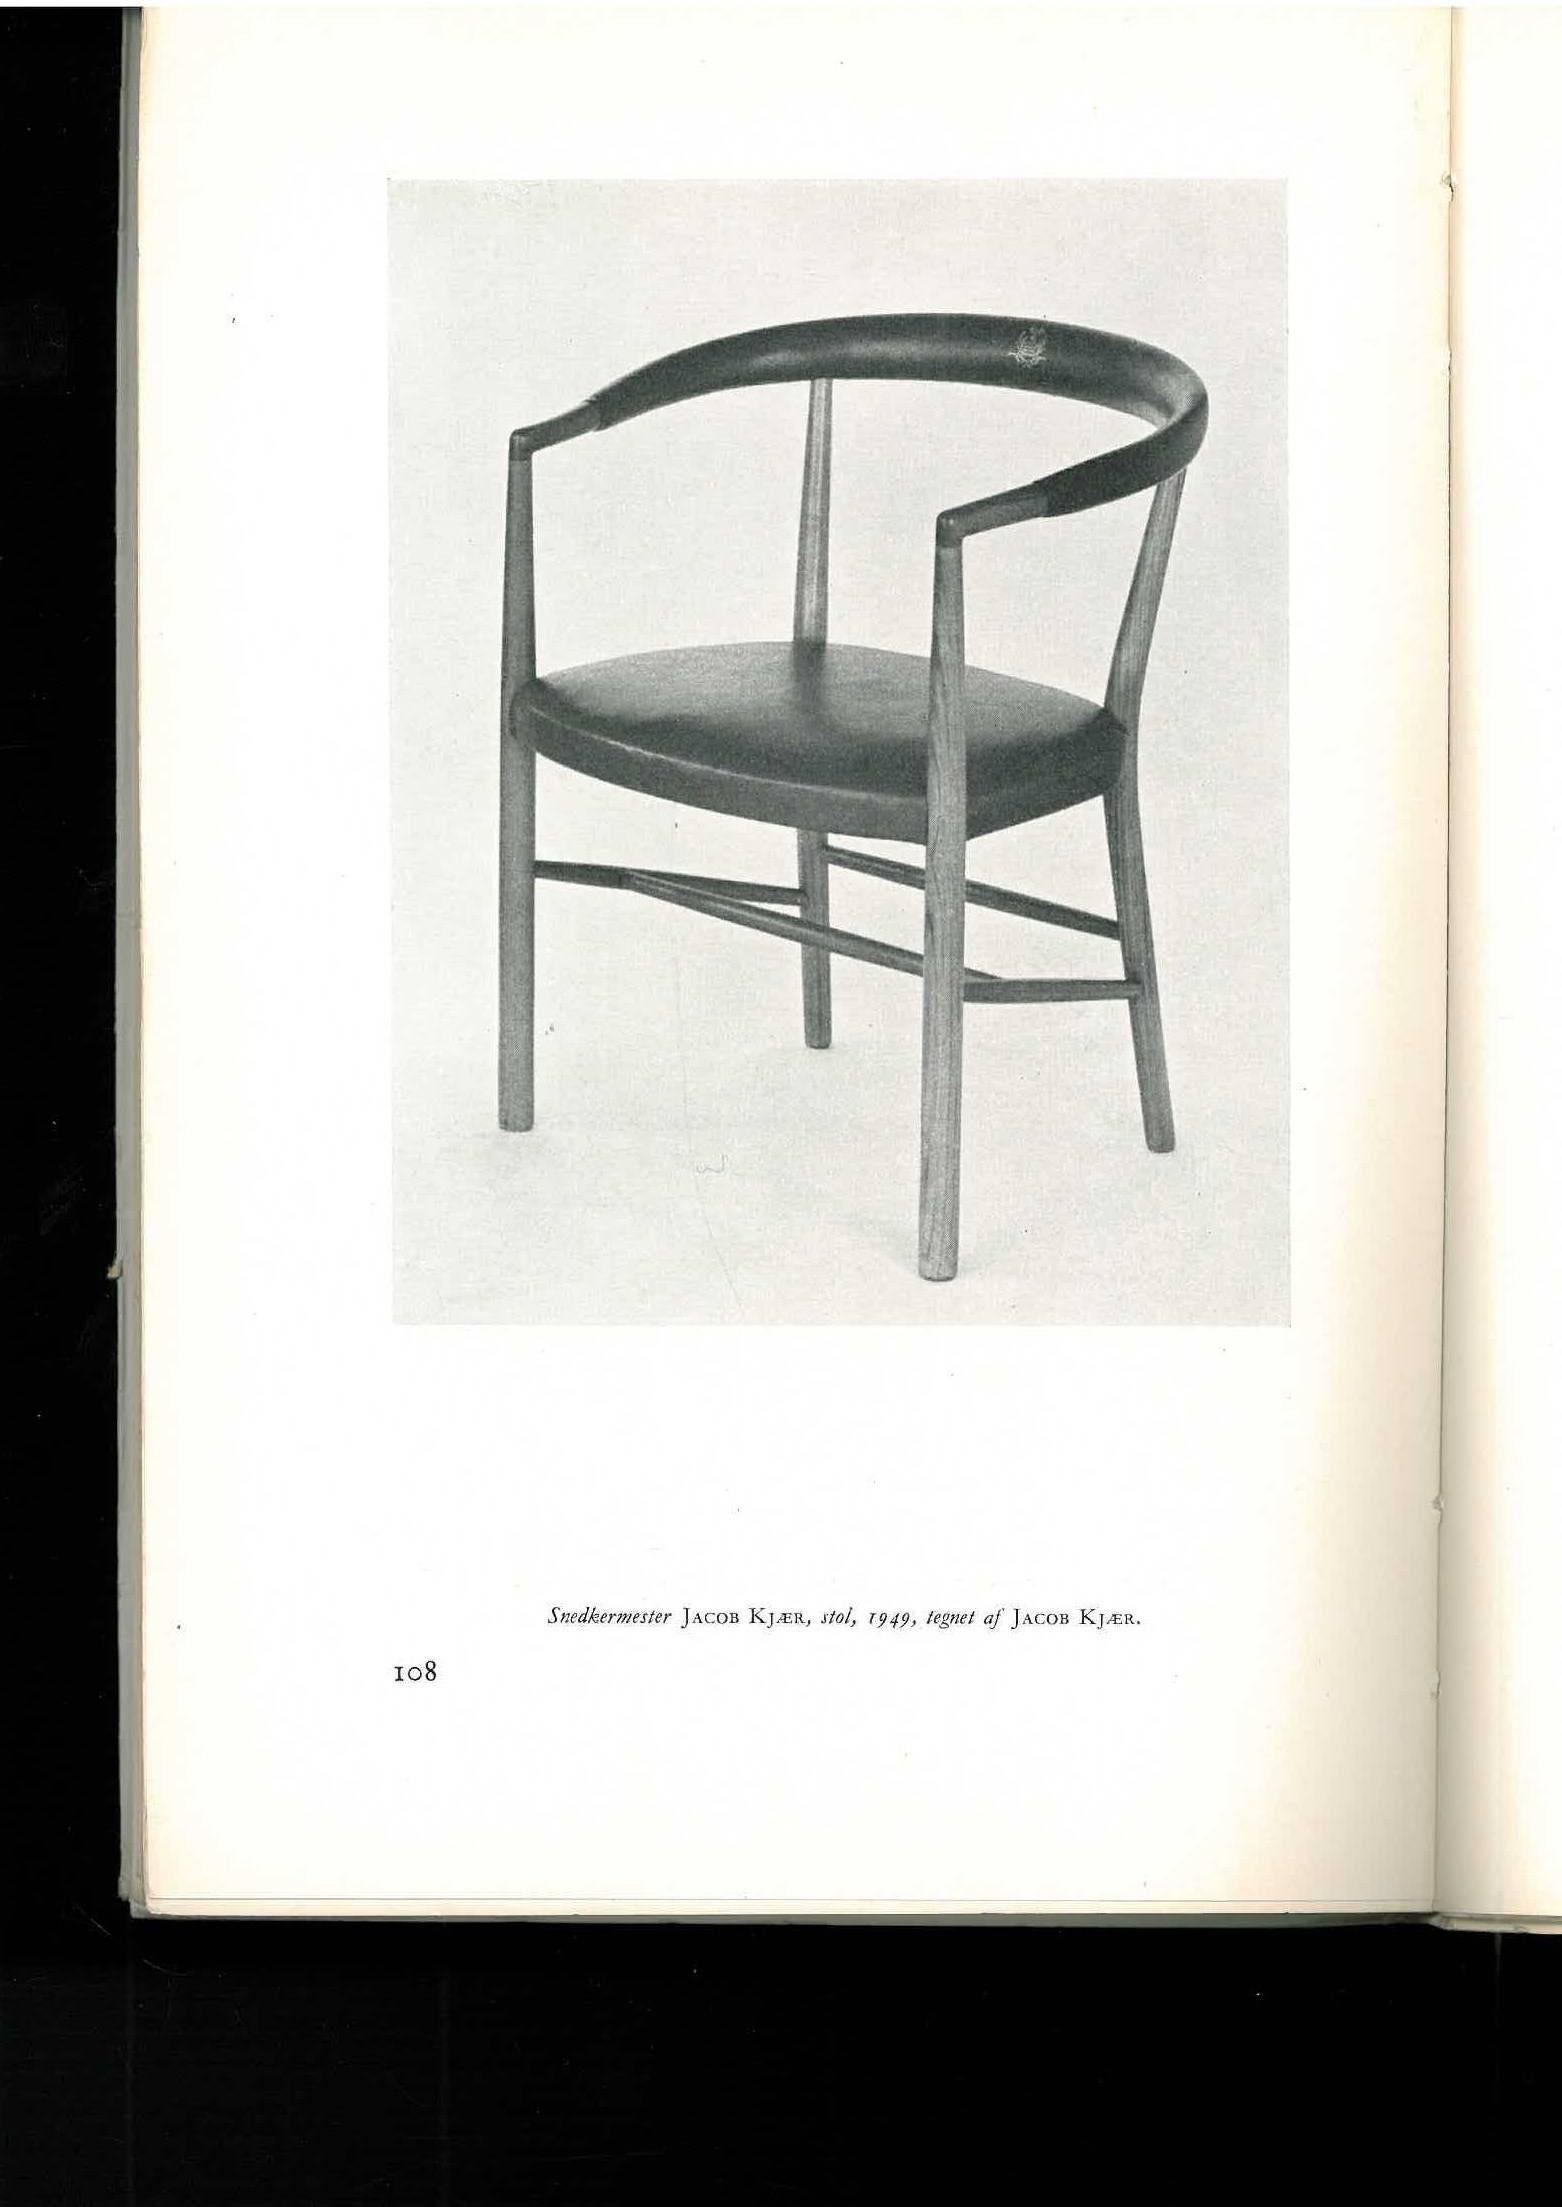 Dansk Mobel Kunst, Danish Furniture Design 'Book' 5